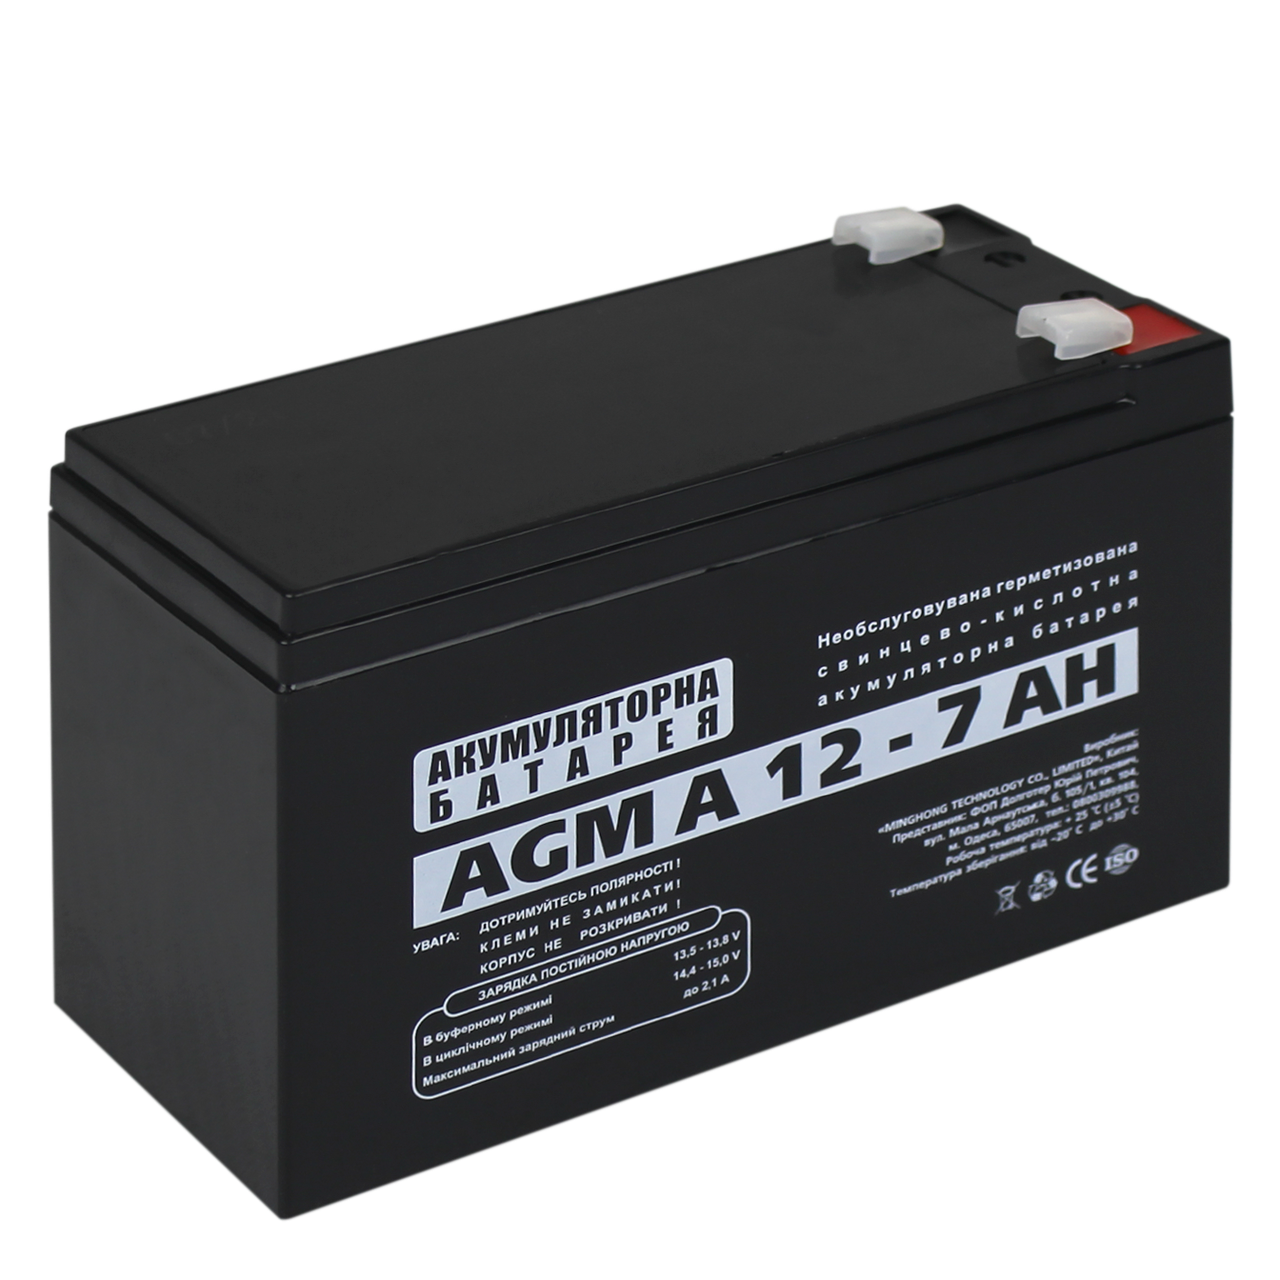  батарея кислотная AGM LogicPower А 12 - 7 AH всего за .